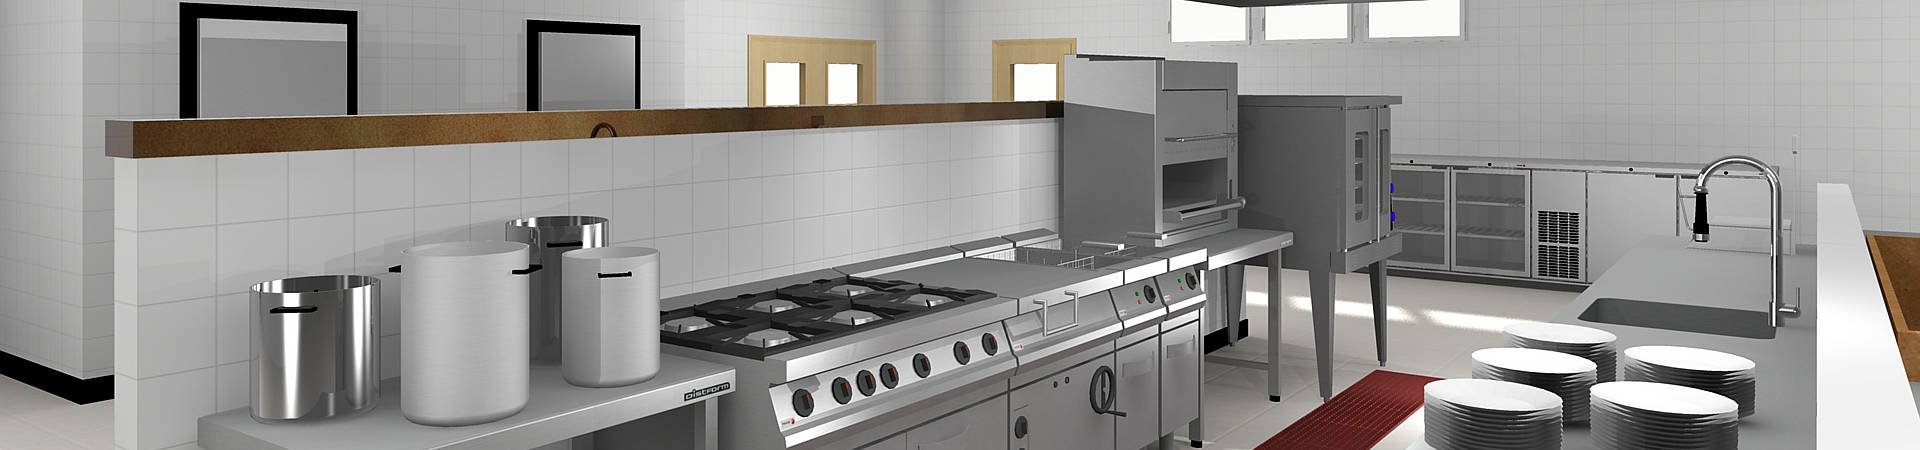 Soluciones especializadas para cada sector: Diseño de cocinas industriales, diseño de baños, diseño de interiores, diseño de oficinas.